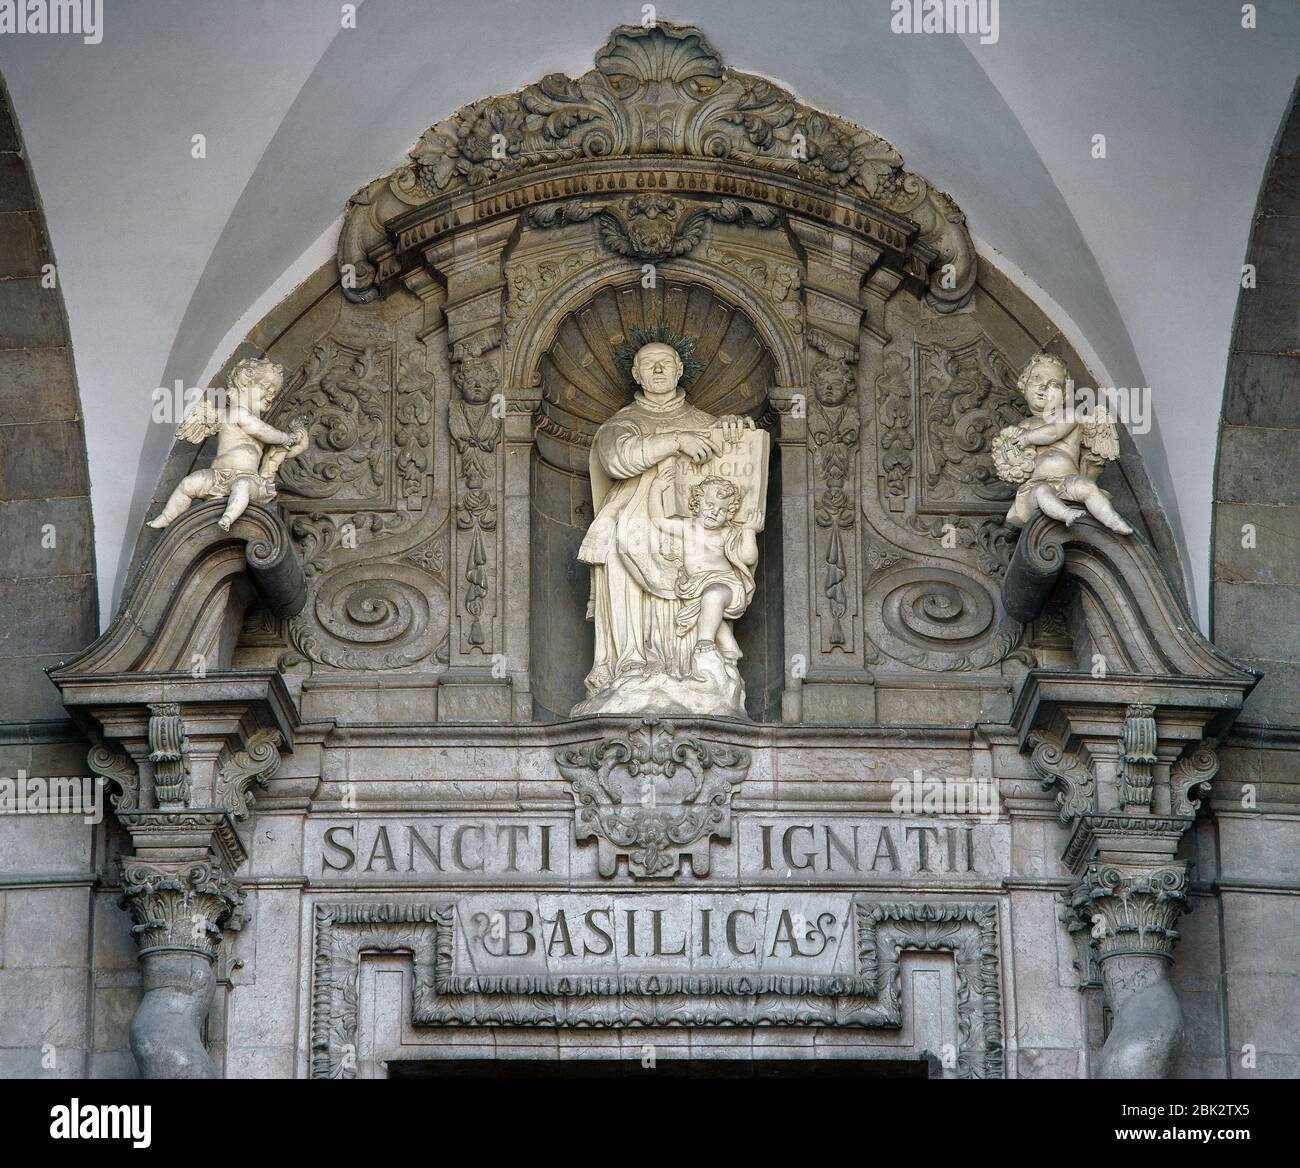 Sant'Ignazio di Loyola (1491-1556). Prete cattolico basco spagnolo, co-fondatore della Compagnia di Gesù (Gesuiti). Dettaglio scultoreo sul portico d'ingresso alla Basilica del Santuario di Loyola. Azpeitia, provincia di Guipuzcoa, Paesi Baschi, Spagna. Foto Stock